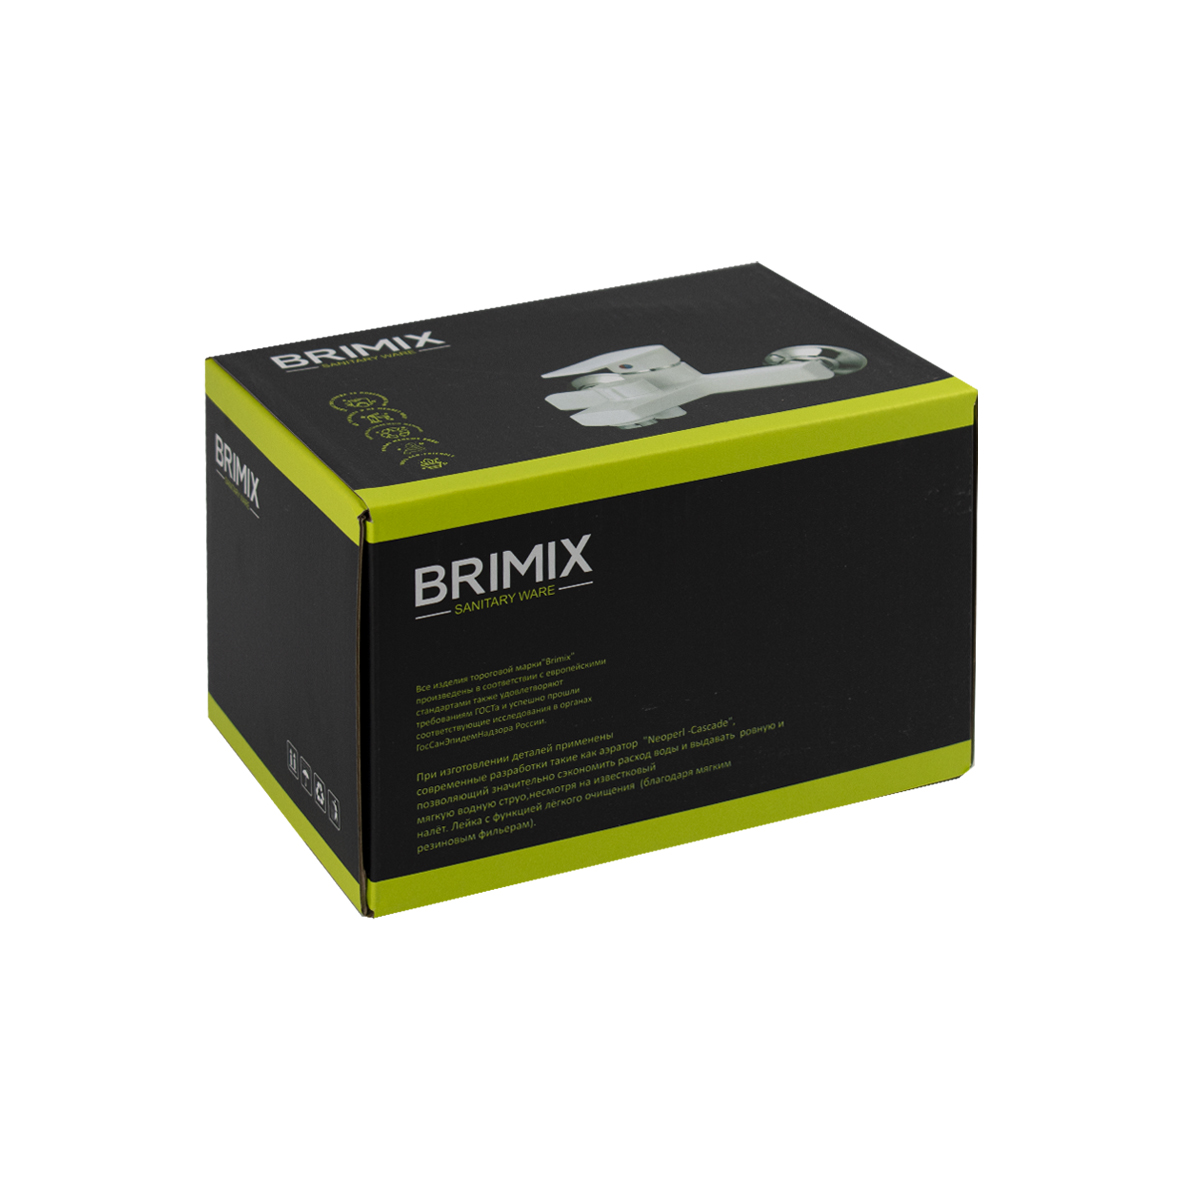 BRIMIX - Смеситель в ванную, короткий излив, шаровый, из высокопрочного пластика АБС, БЕЛЫЙ, поворотный дивертор